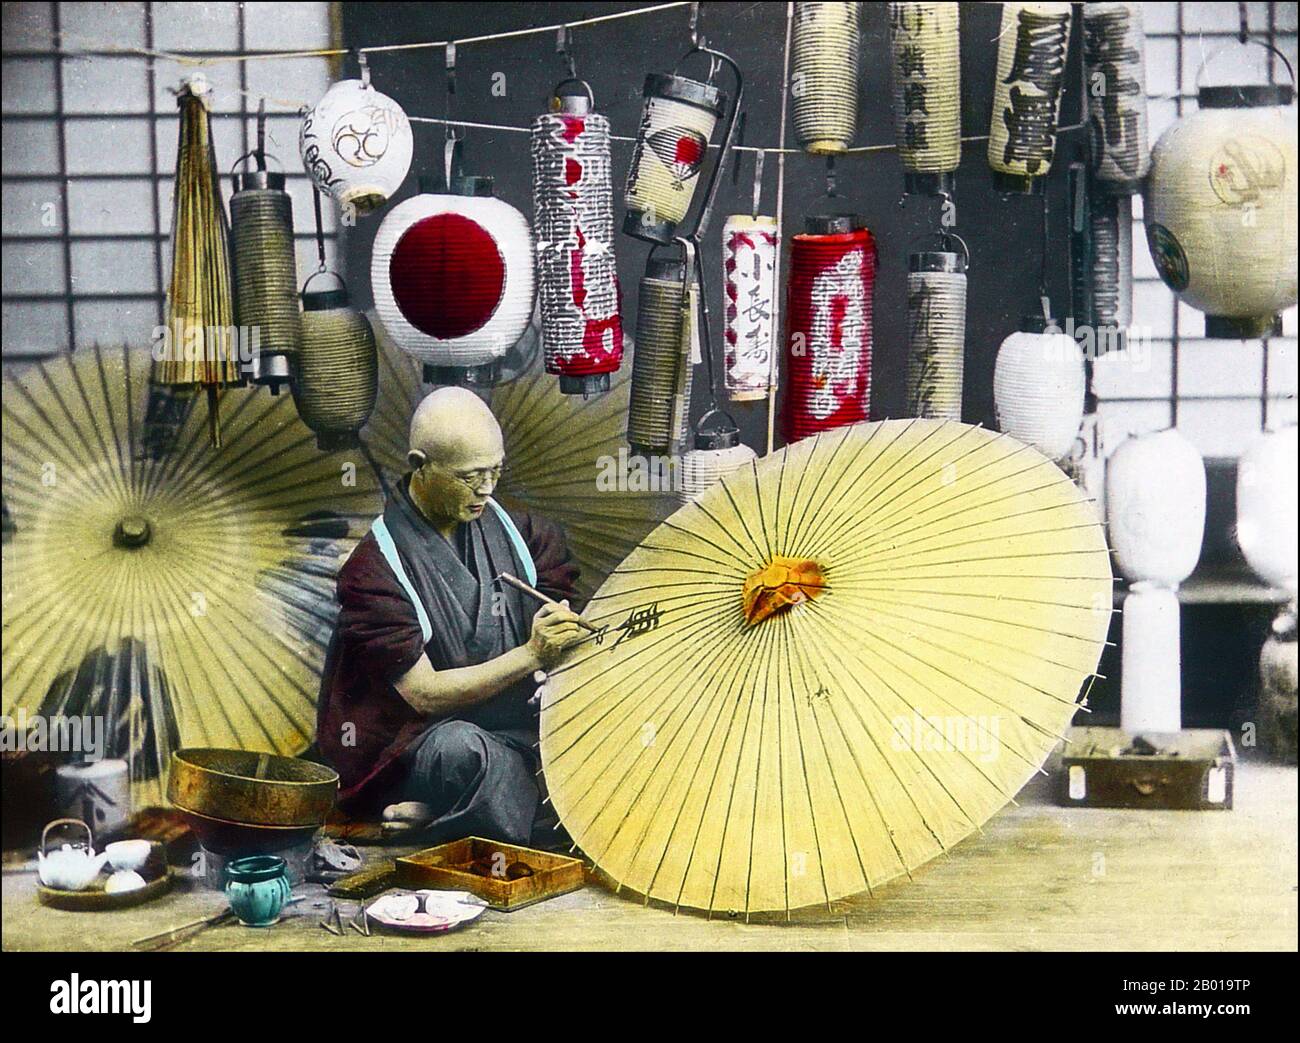 Japon: Un fabricant de parapluie peignant un parasol. Photo de T. Enami (1859-1929), c. 1900-1910. T. Enami (Enami Nobukuni) était le nom commercial d'un célèbre photographe de l'époque Meiji. Le T. de son nom commercial est censé avoir représenté Toshi, bien qu'il ne l'ait jamais écrit sur aucun document personnel ou d'affaires. Né à Edo (aujourd'hui Tokyo) pendant l'ère Bakumatsu, Enami a d'abord été étudiant, puis assistant du célèbre photographe et collectionniste, Ogawa Kazumasa. Enami a déménagé à Yokohama, et a ouvert un studio sur Benten-dōri (rue Benten) en 1892. Banque D'Images